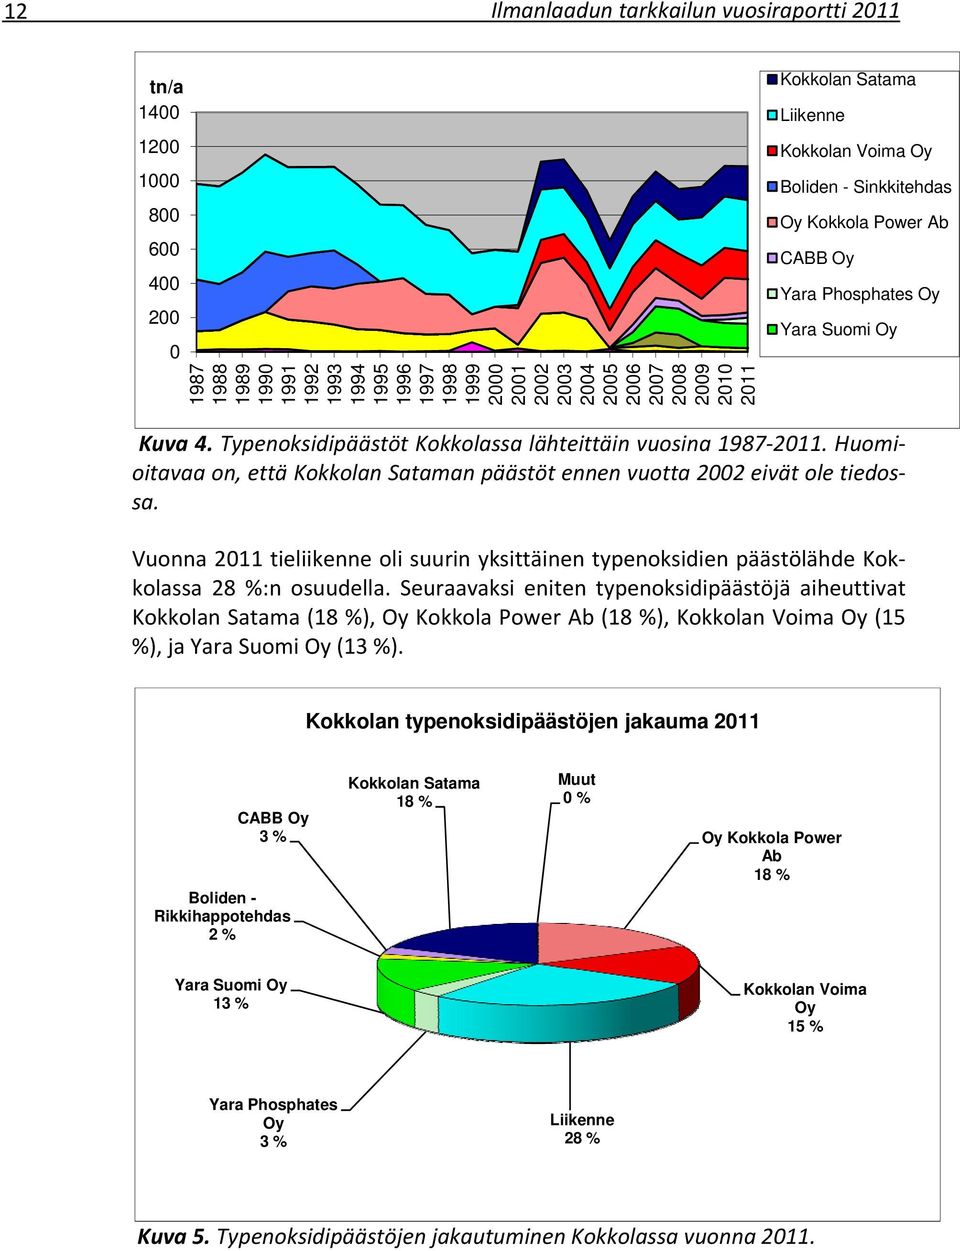 Typenoksidipäästöt Kokkolassa lähteittäin vuosina 1987 2011. Huomioitavaa on, että Kokkolan Sataman päästöt ennen vuotta 2002 eivät ole tiedossa.